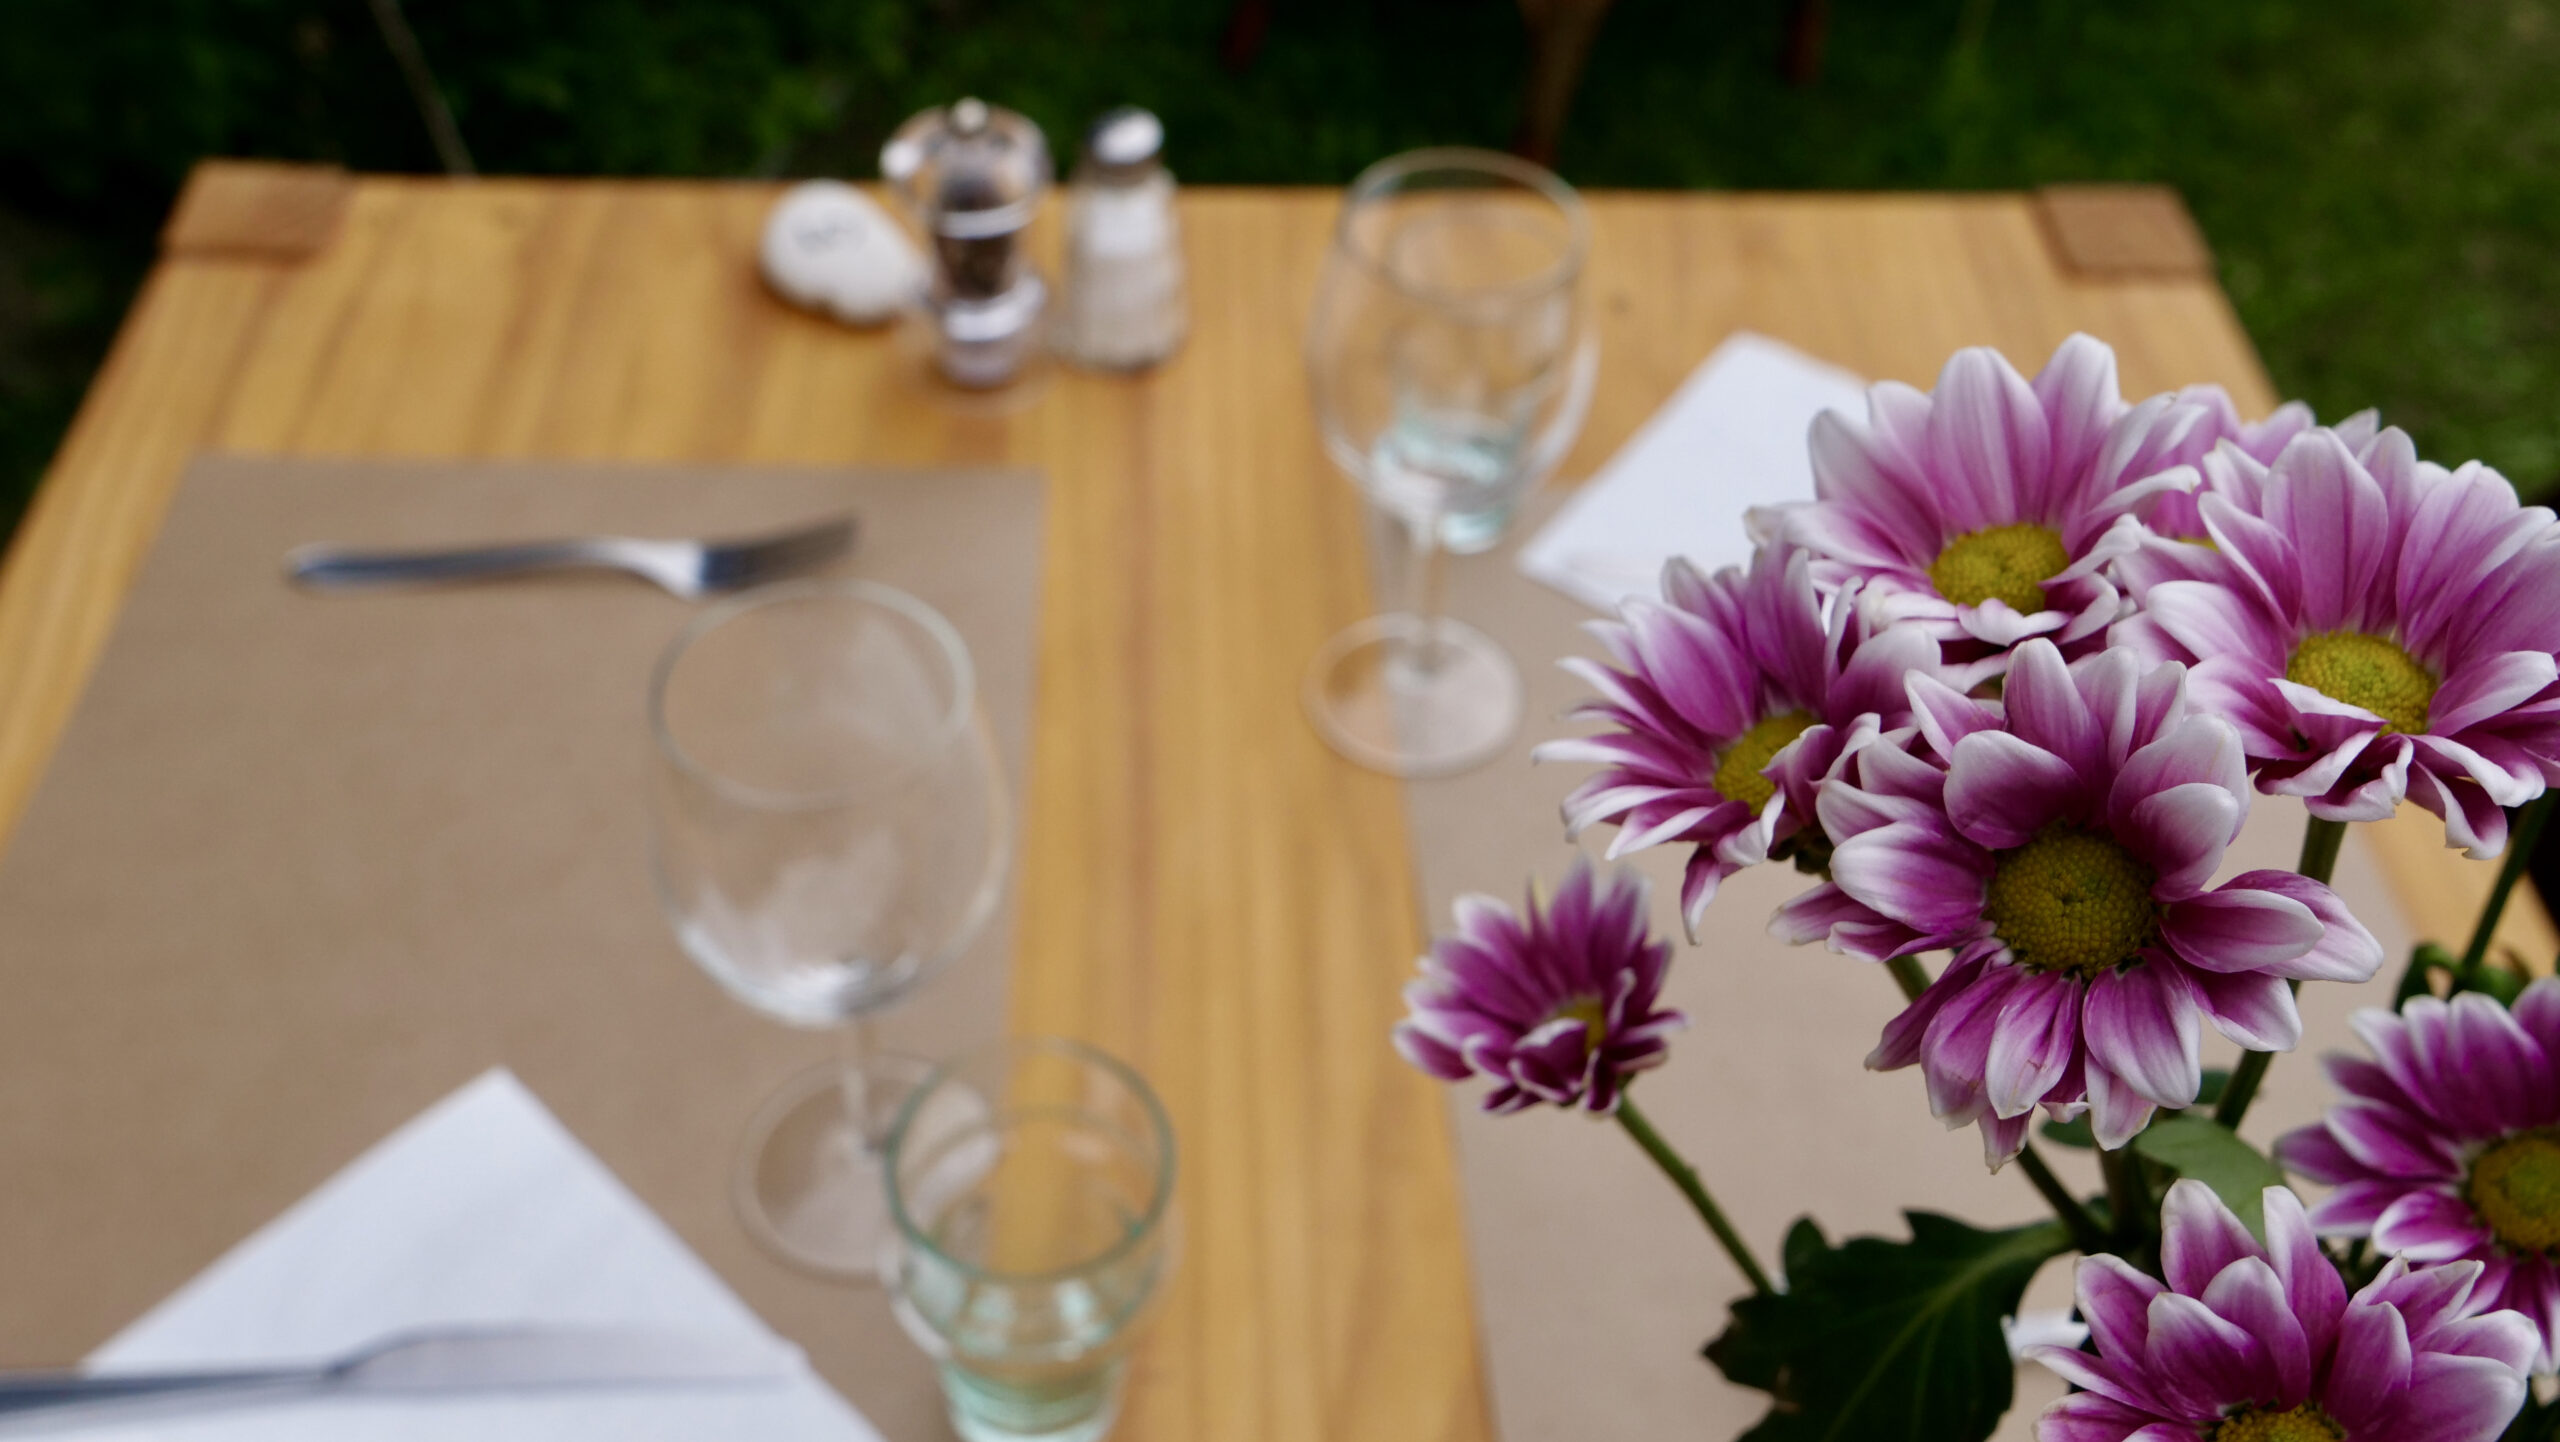 Table de la buvette de l'atelier du mayen de mase avec fleurs du jardin